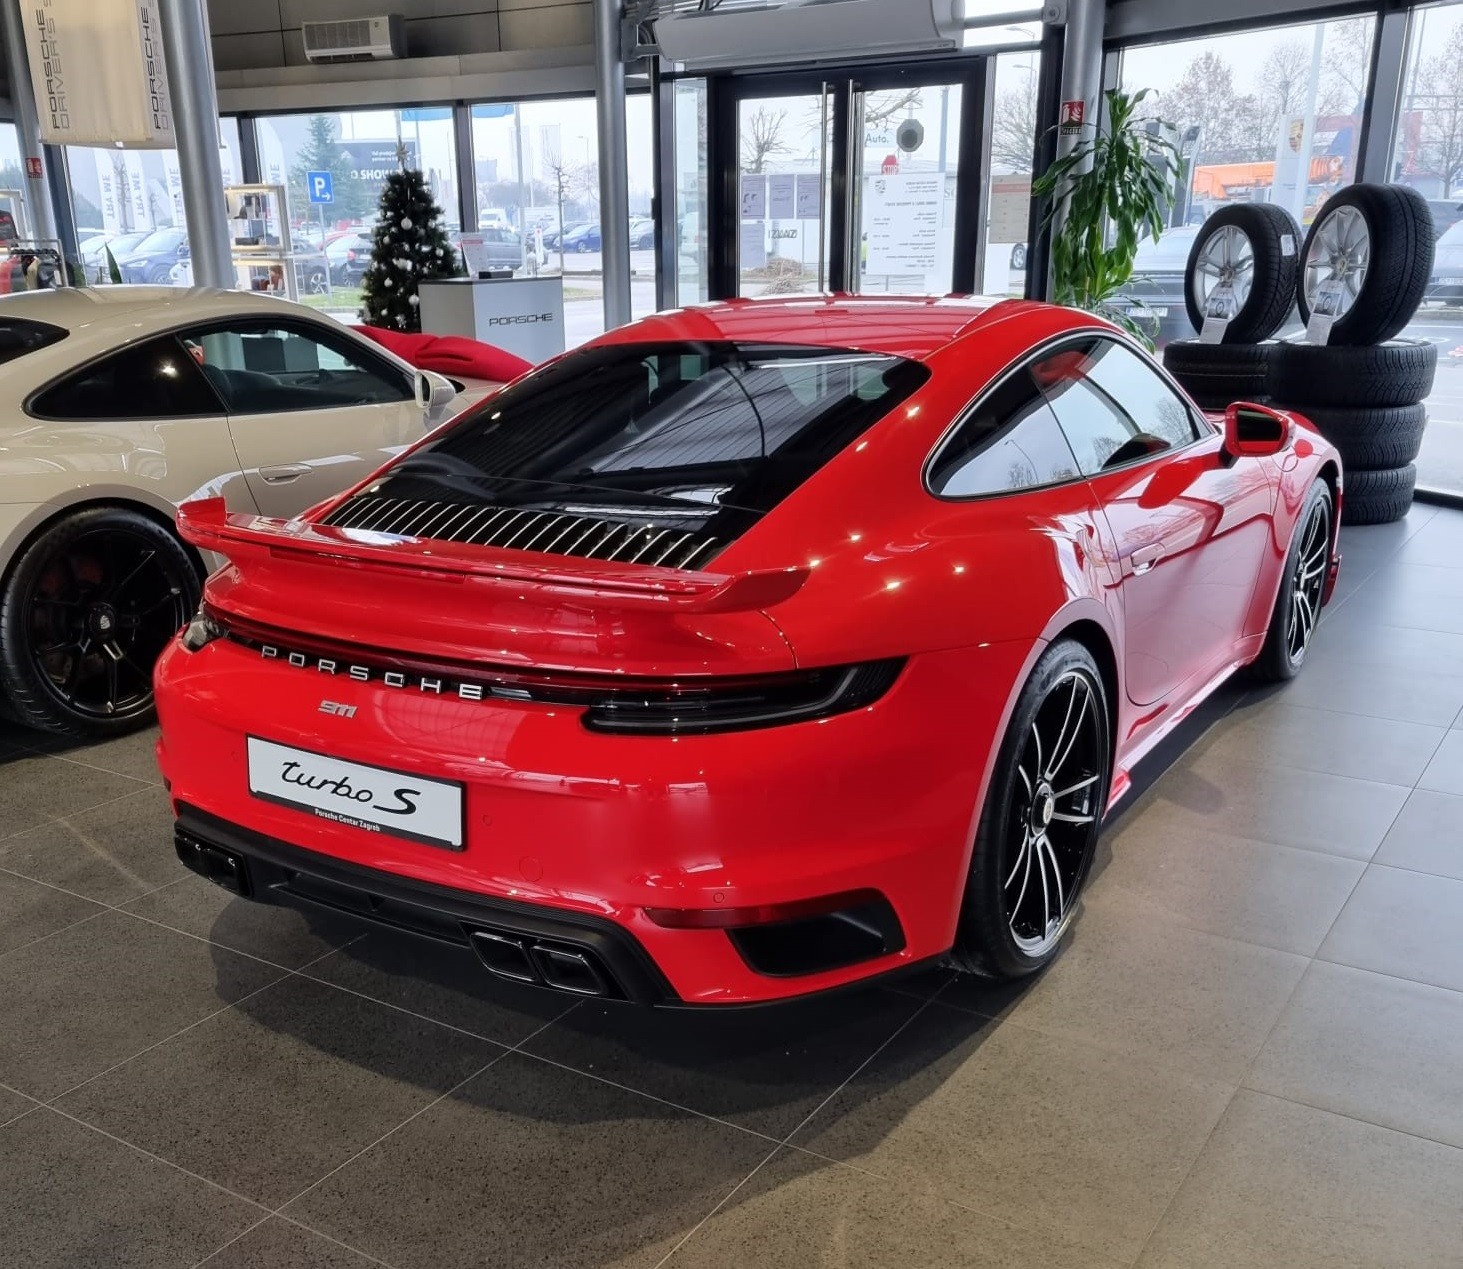 Porsche salon